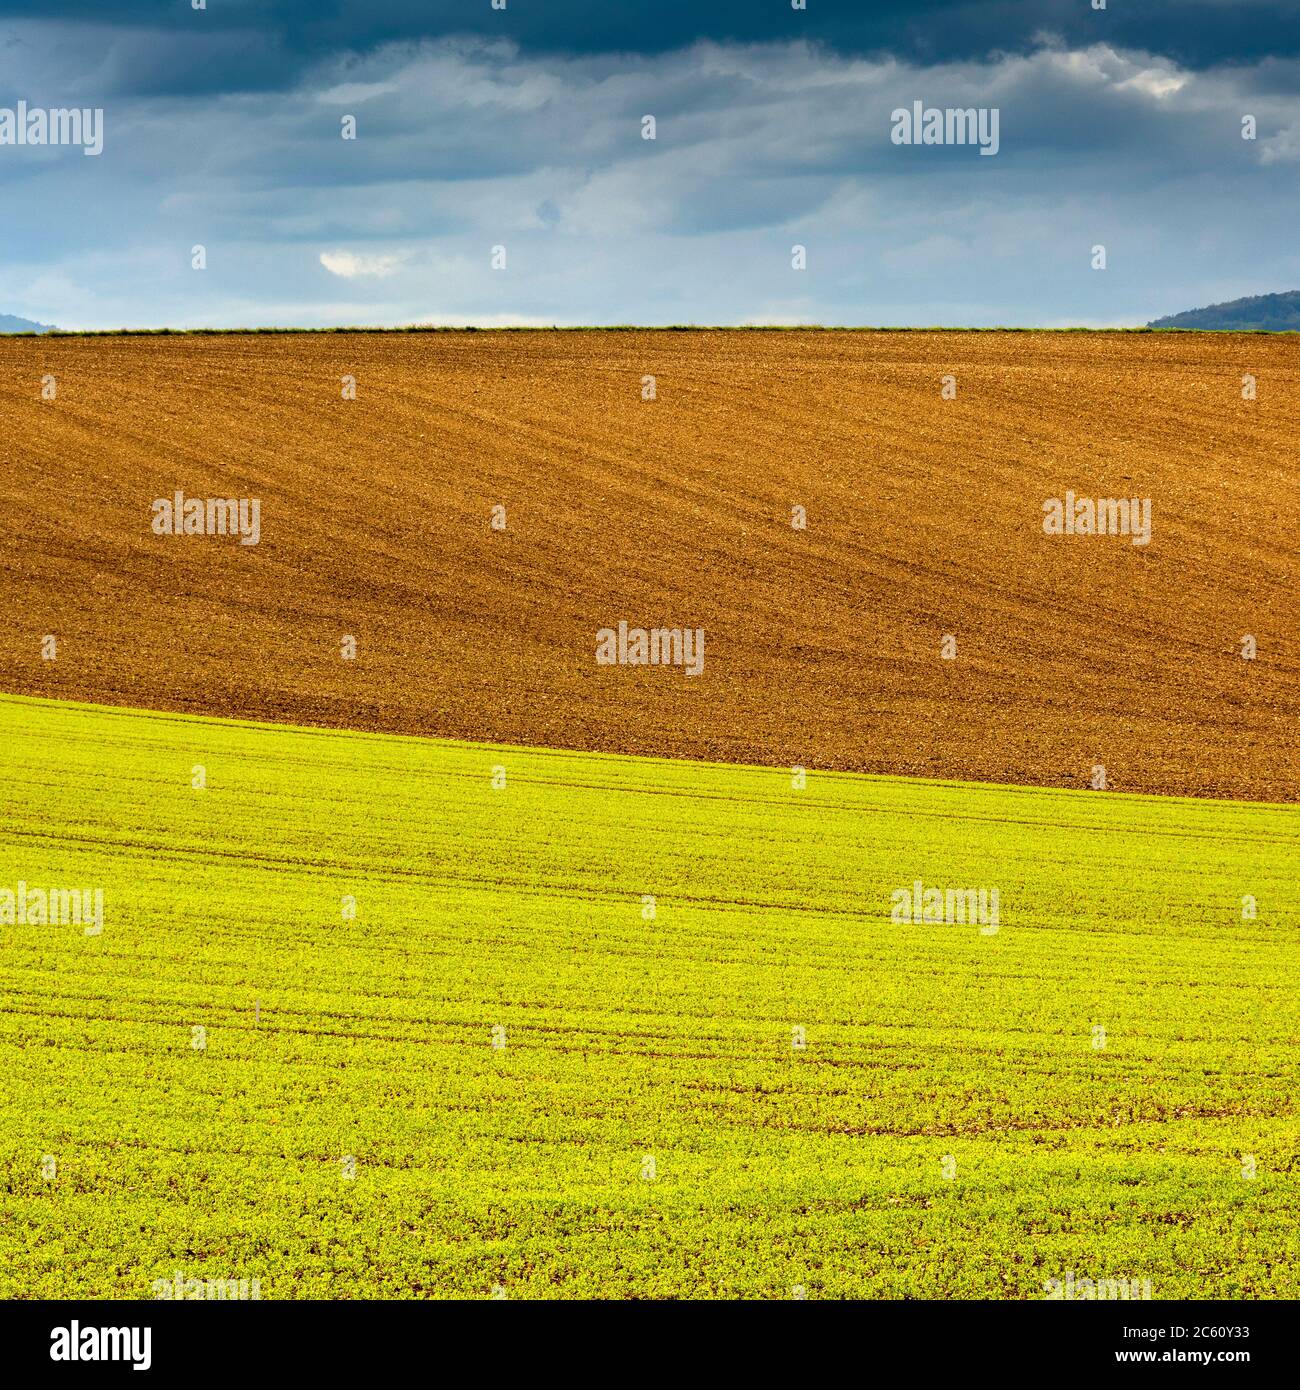 Campo de alfalfa, Auvernia Ródano Alpes, Francia Foto de stock